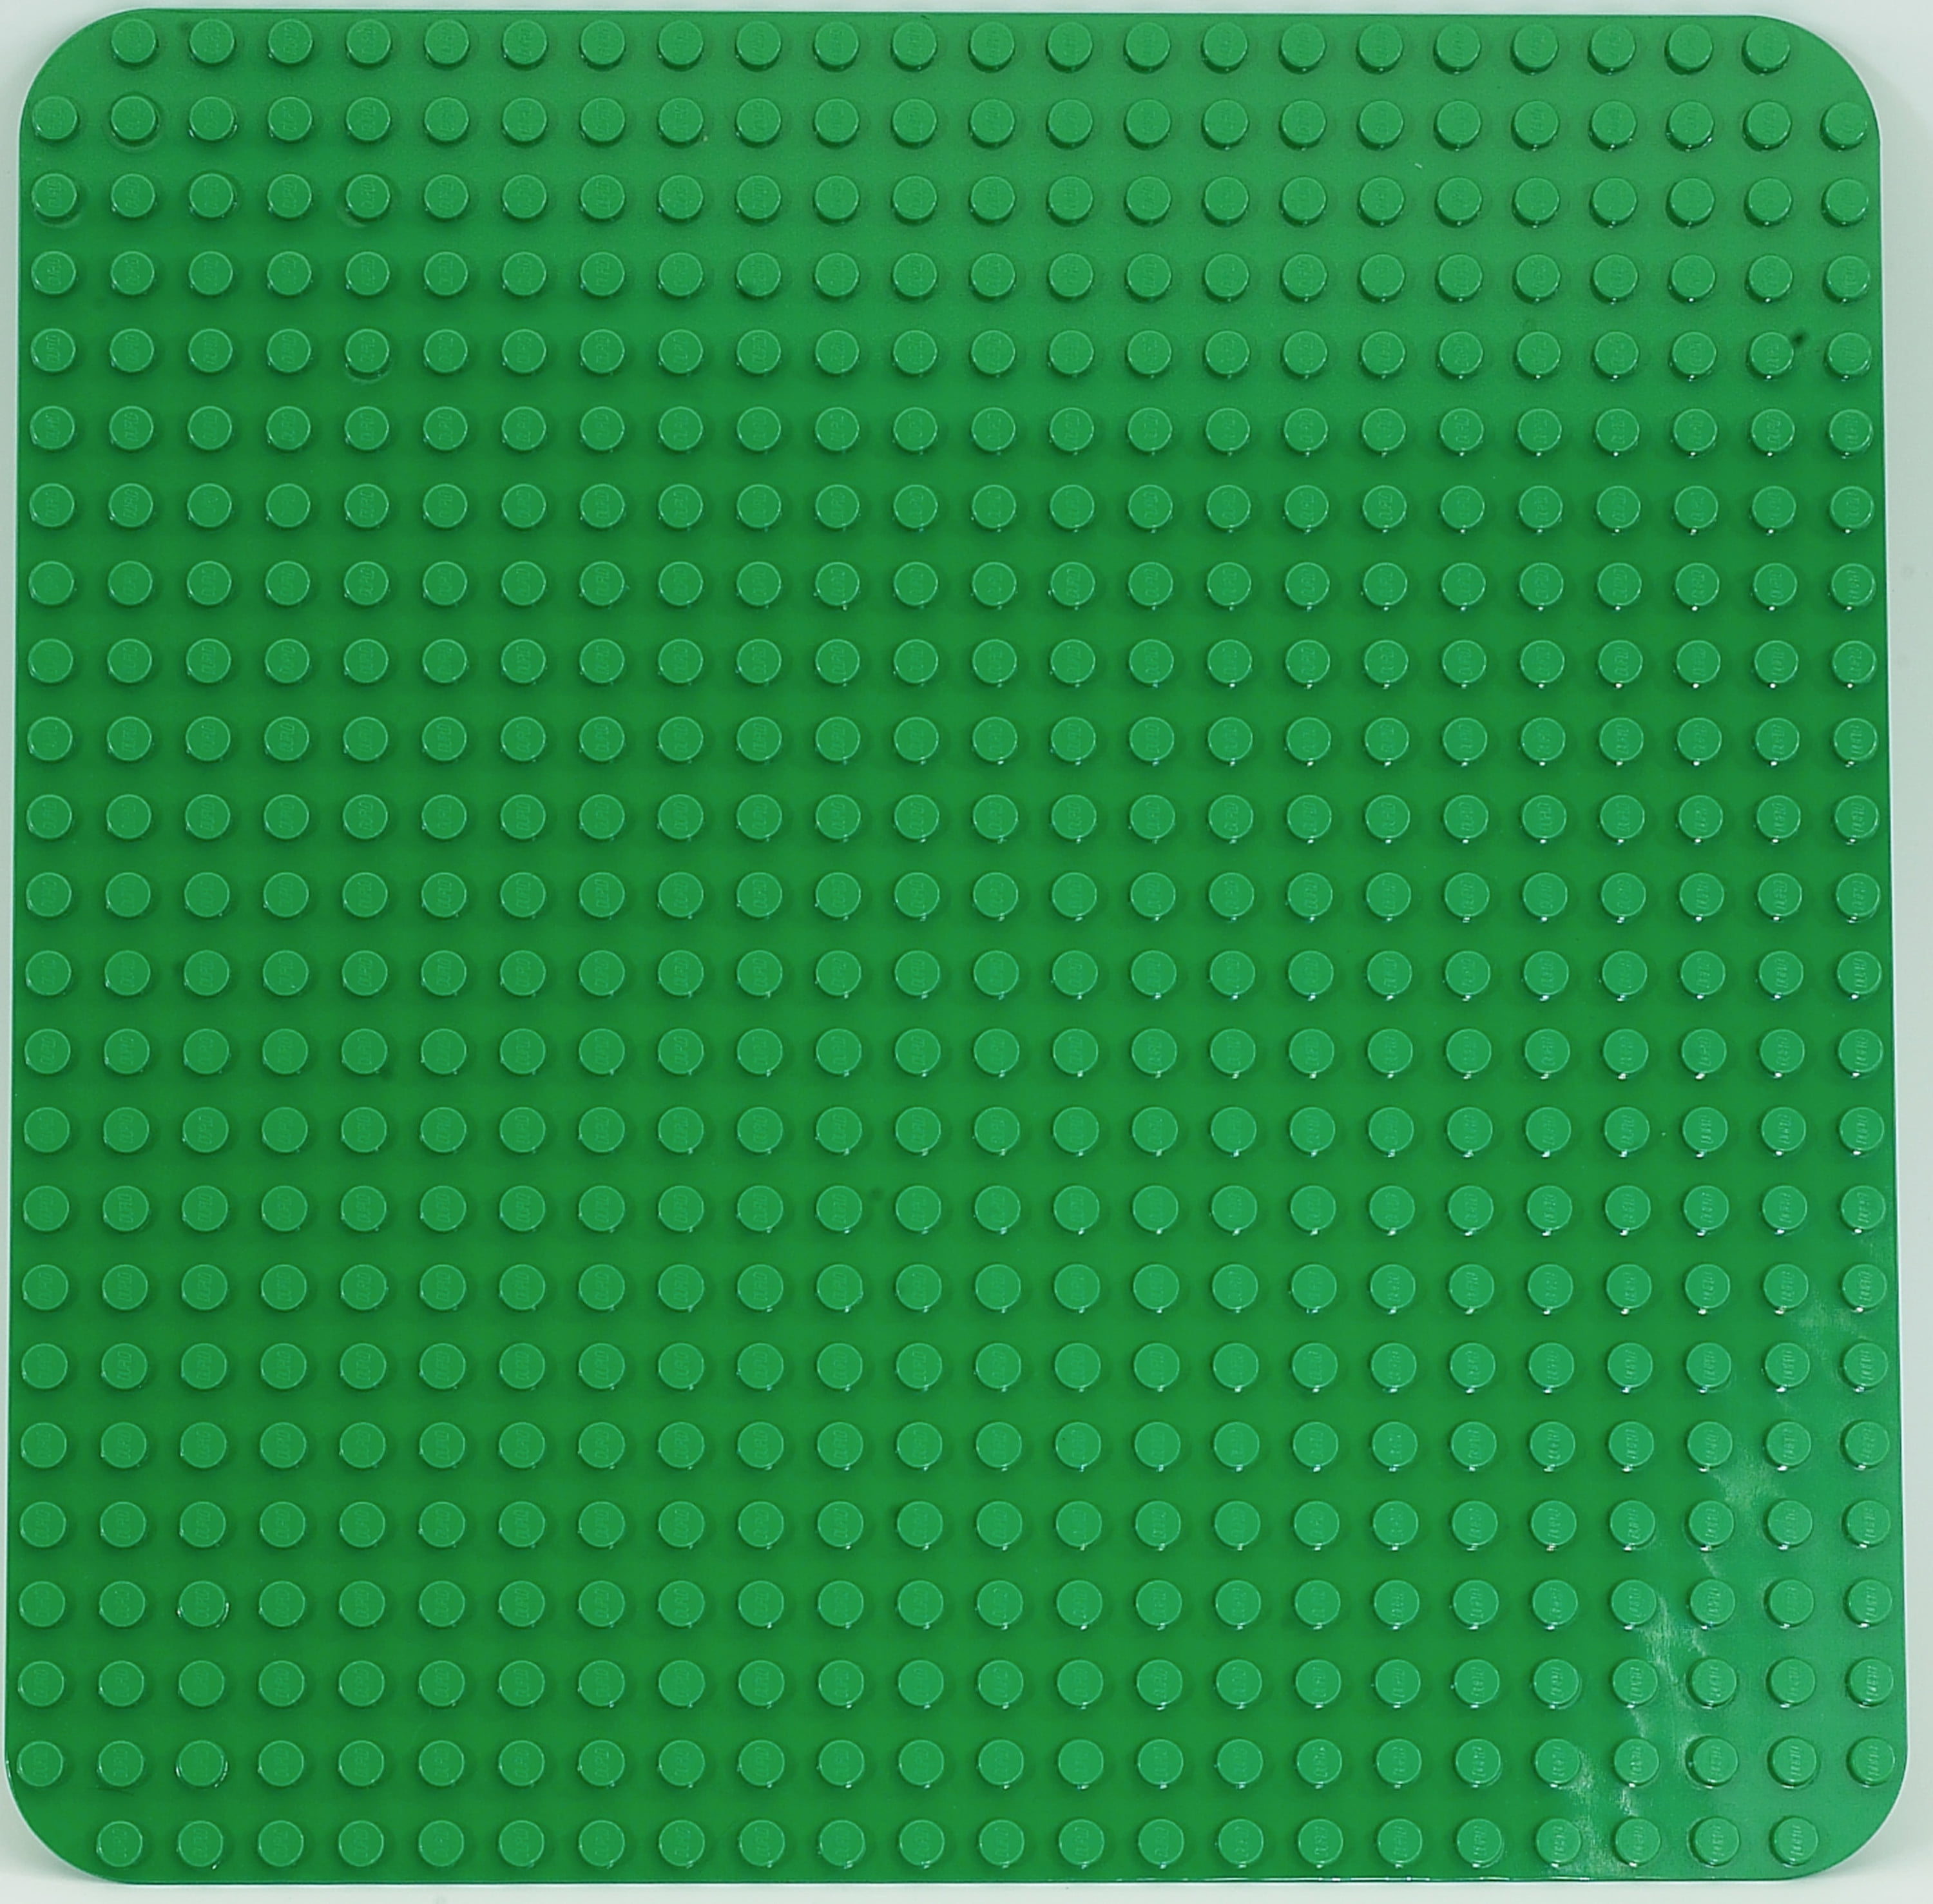 Lego Duplo Grande Green Building placa 2304 placa base 24 X 24 Clavijas en tamaño 